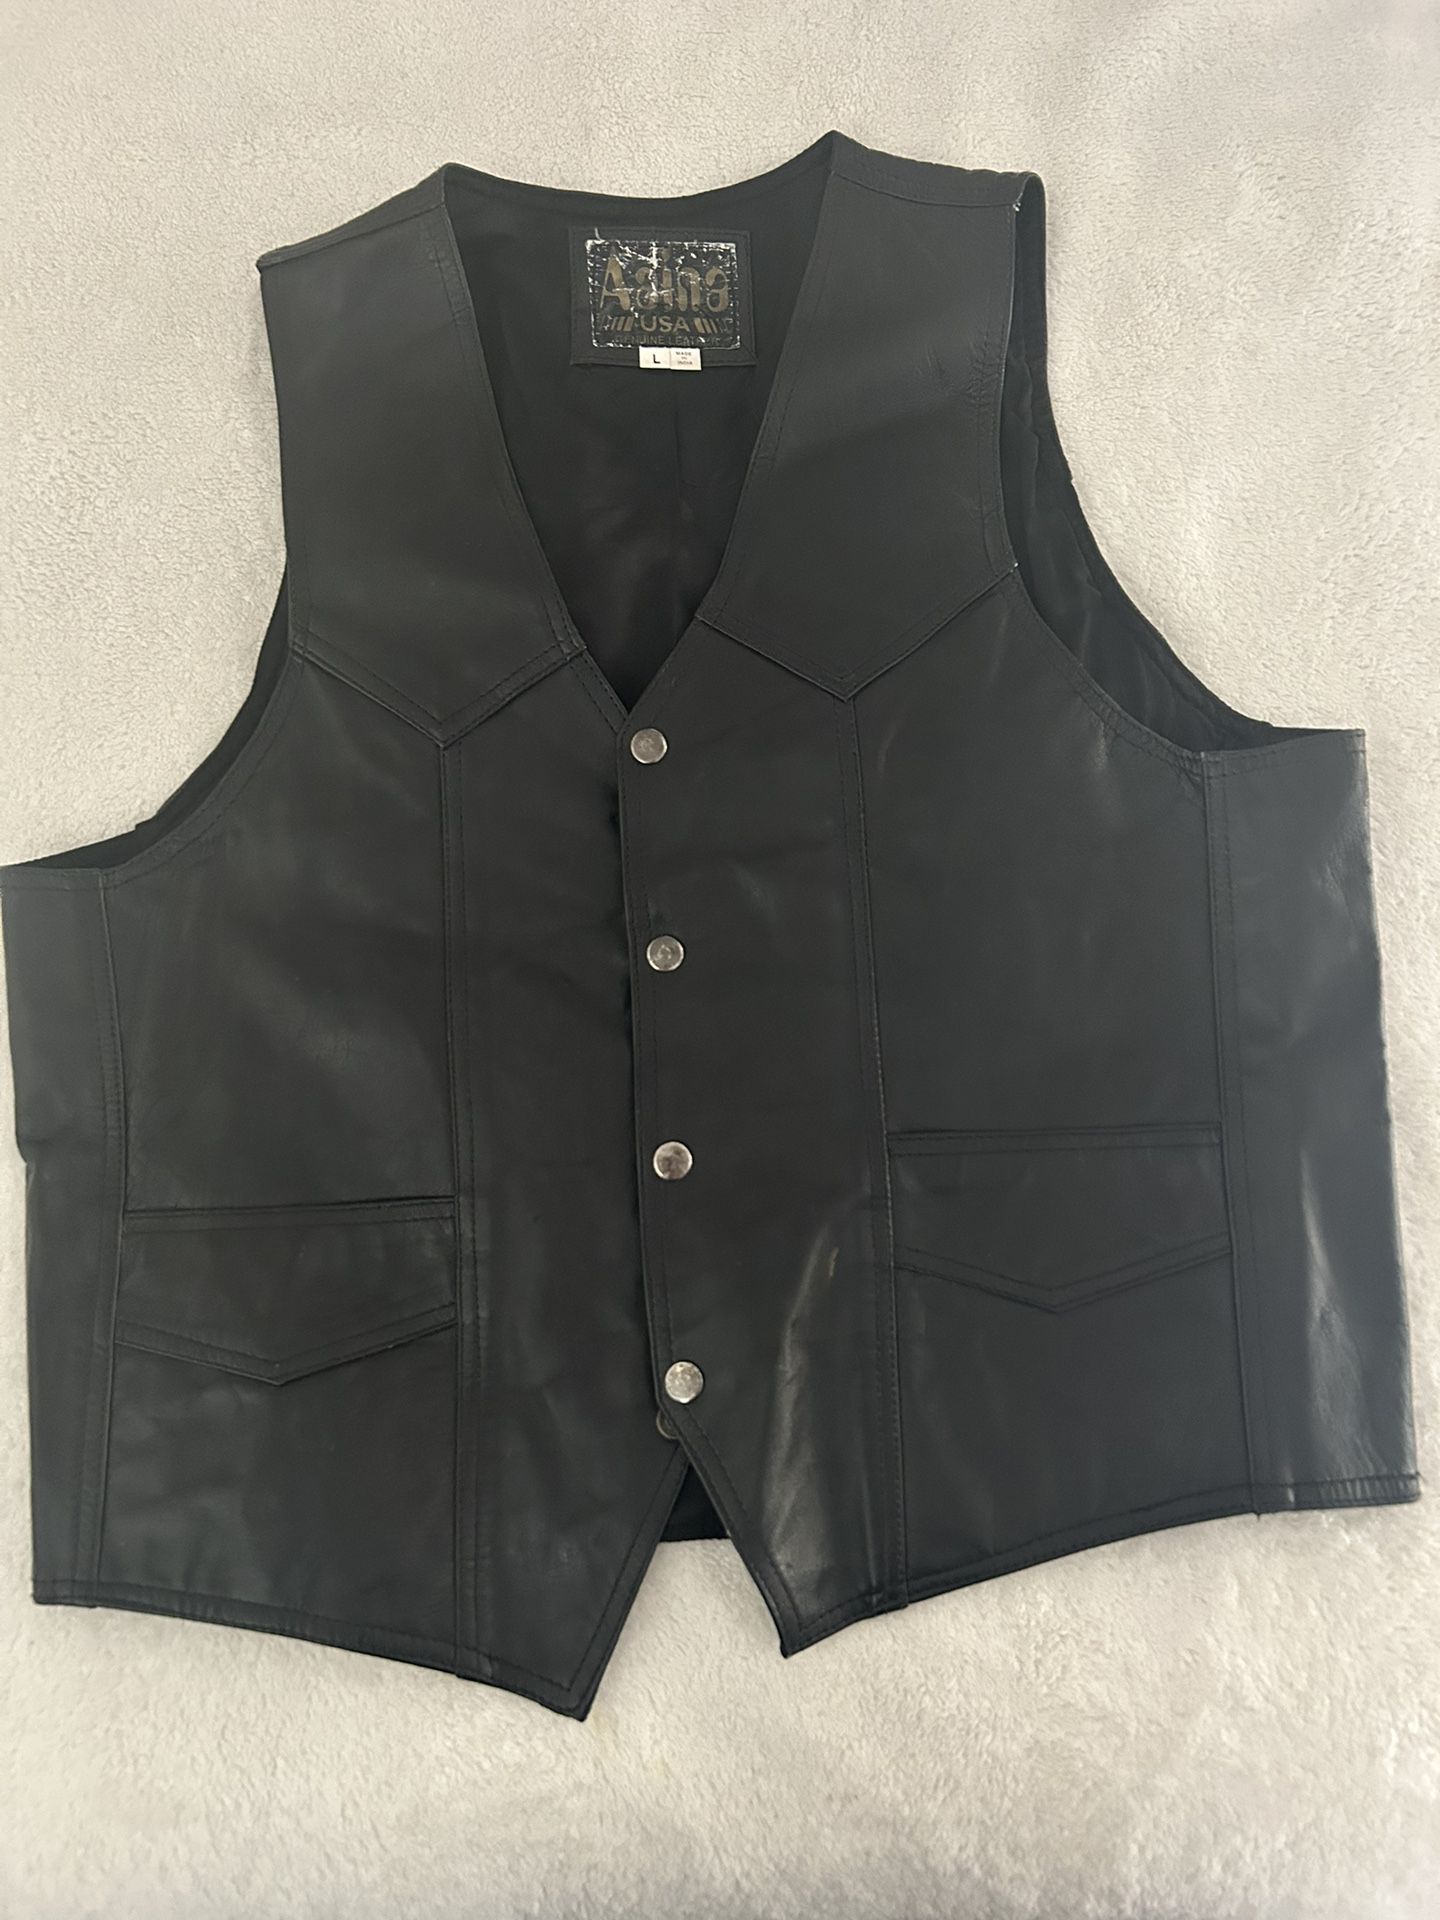 Black Leather Vest Size L